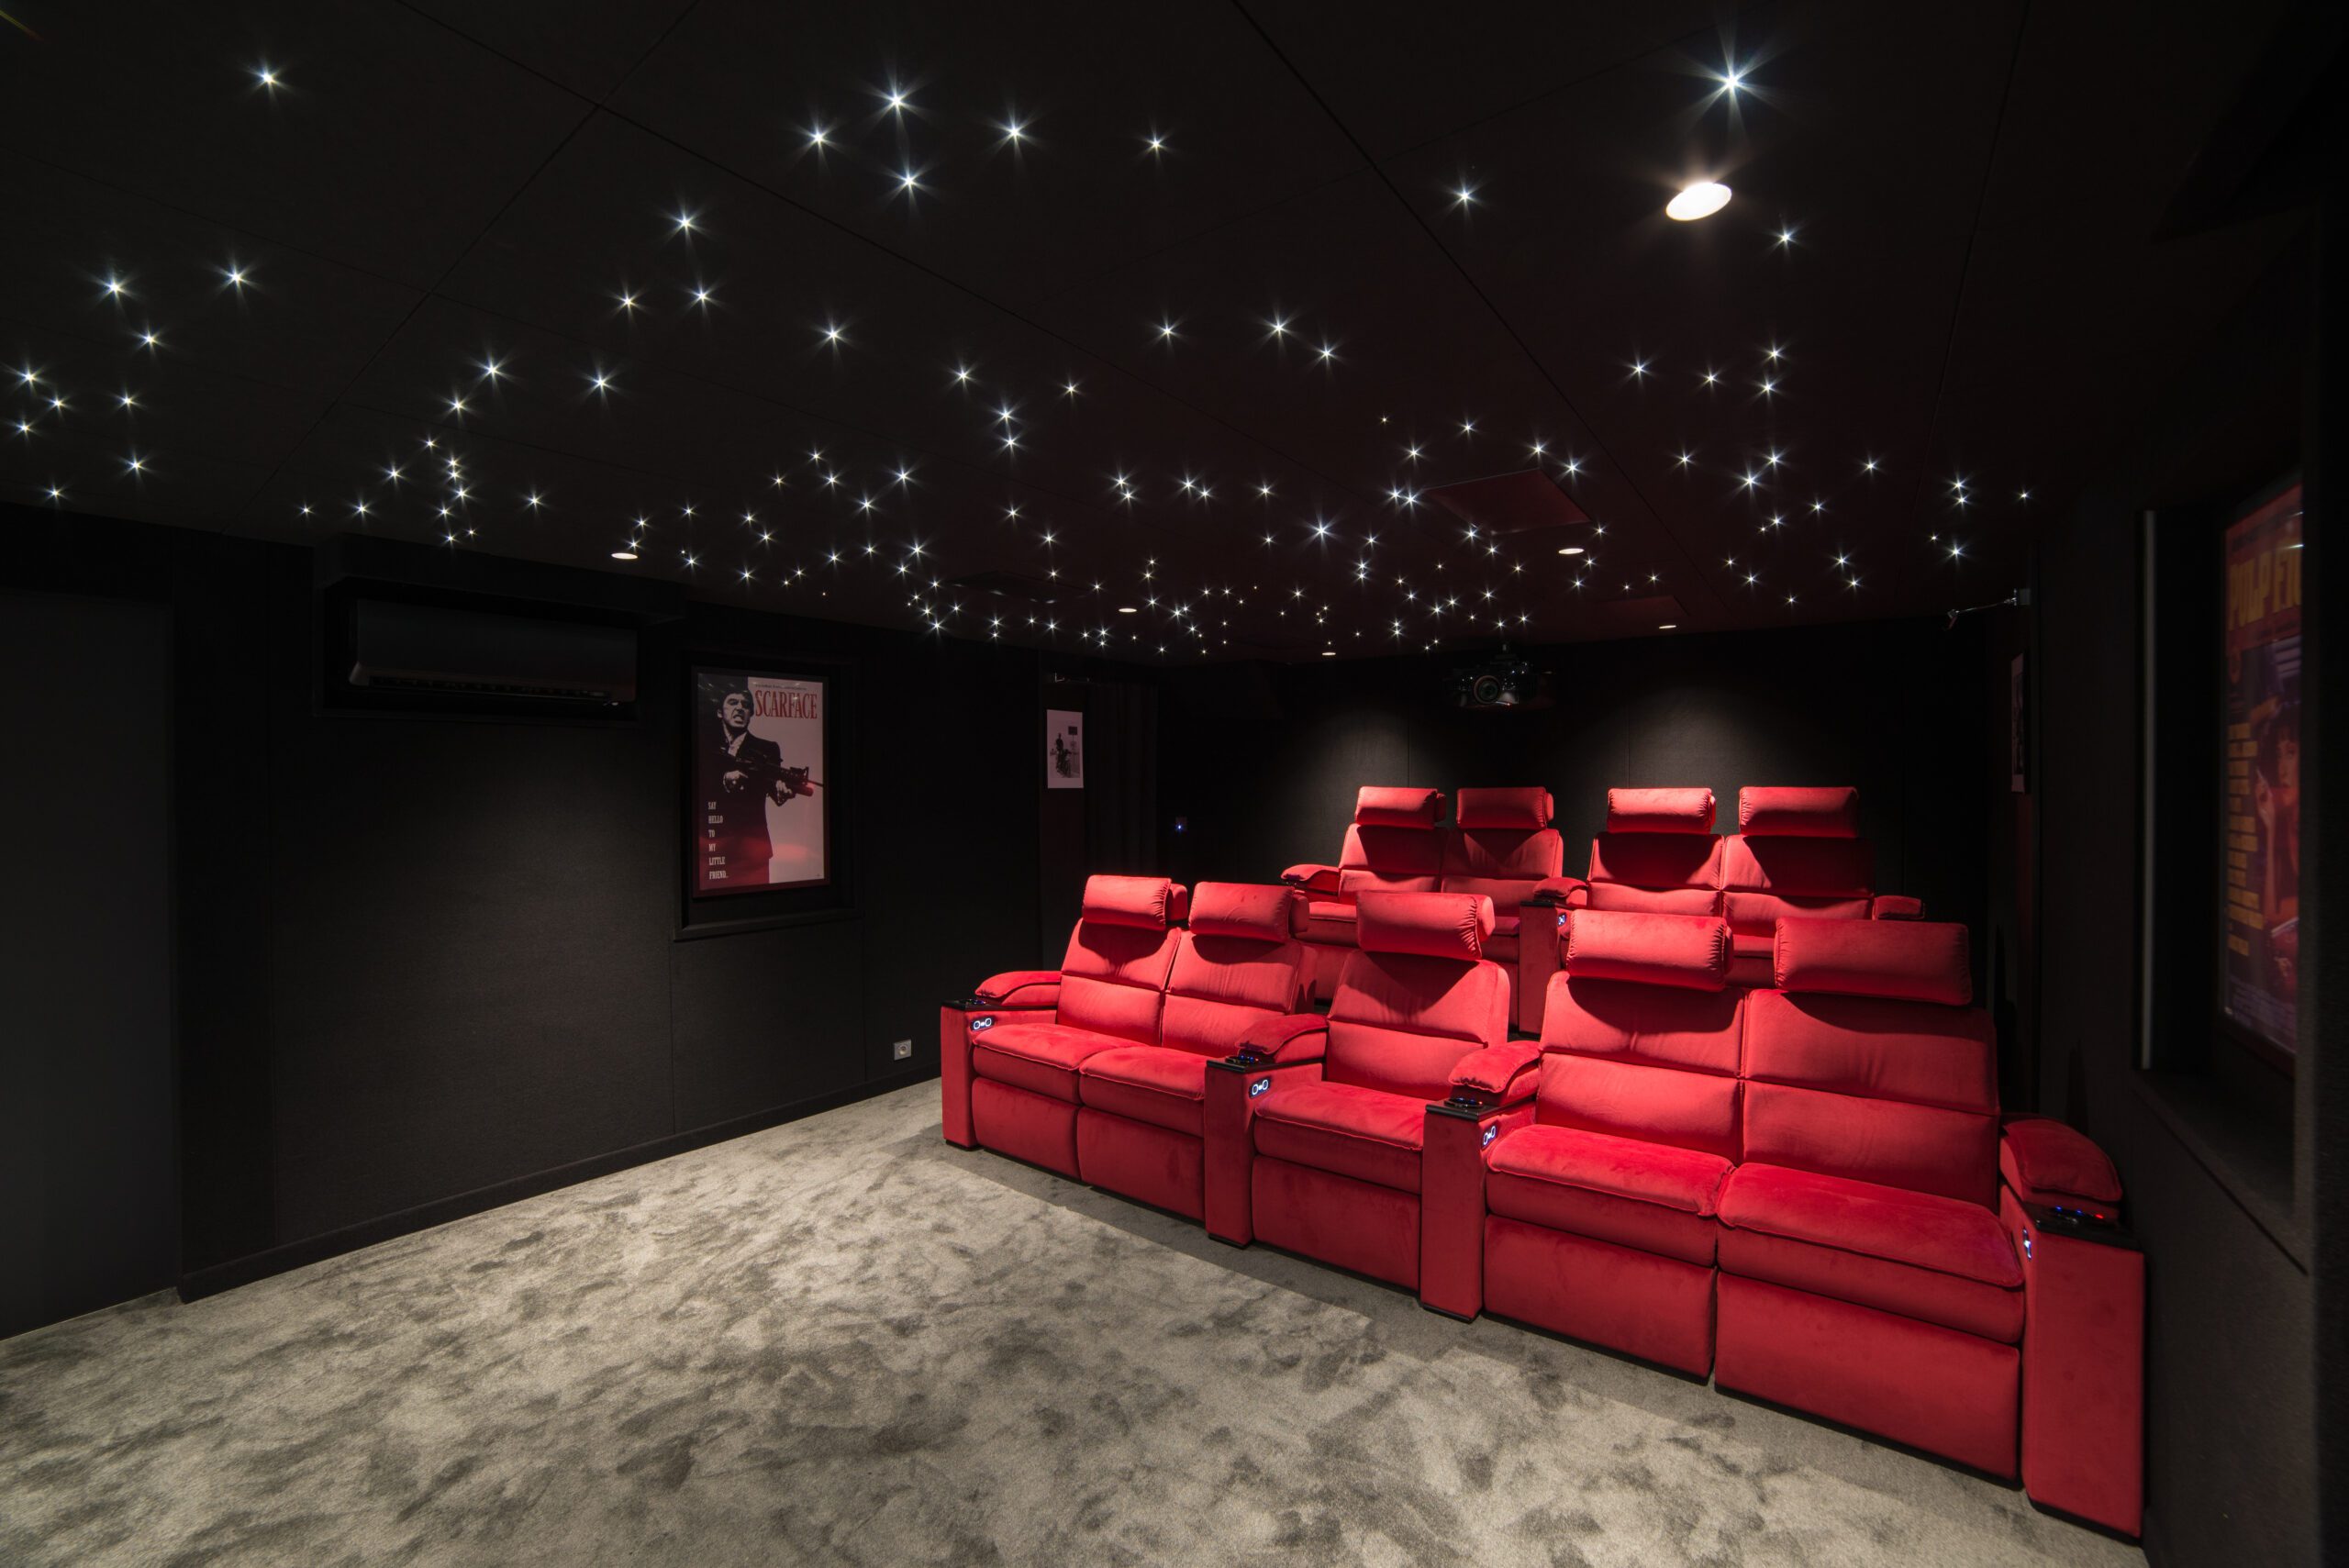 Salle de cinéma privée réalisée par Ocinema